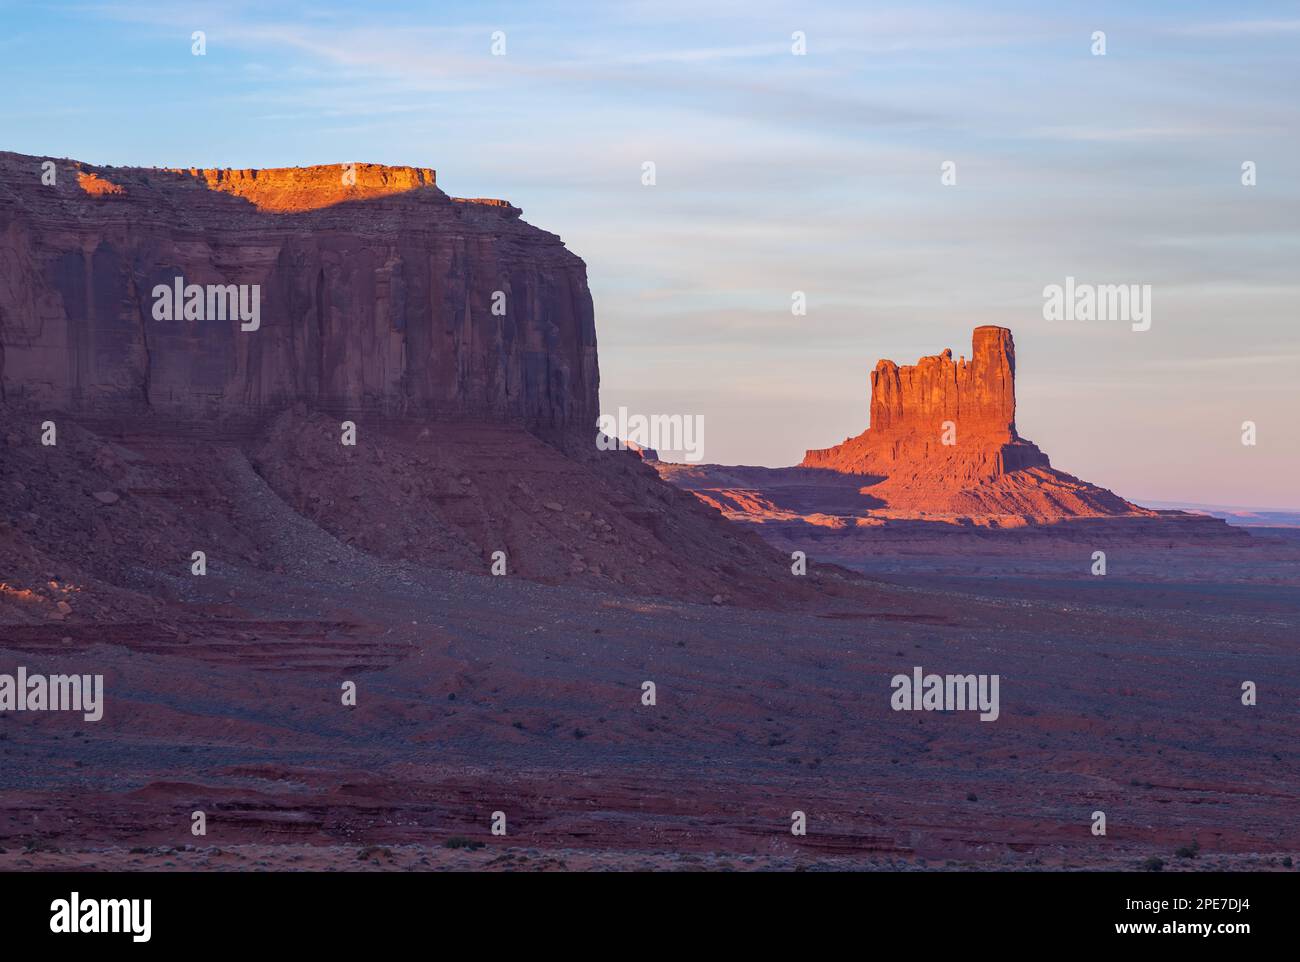 Ein Bild der Monument Valley Landschaft bei Sonnenuntergang, mit der Big Indian Butte Felsformation auf der rechten Seite. Stockfoto